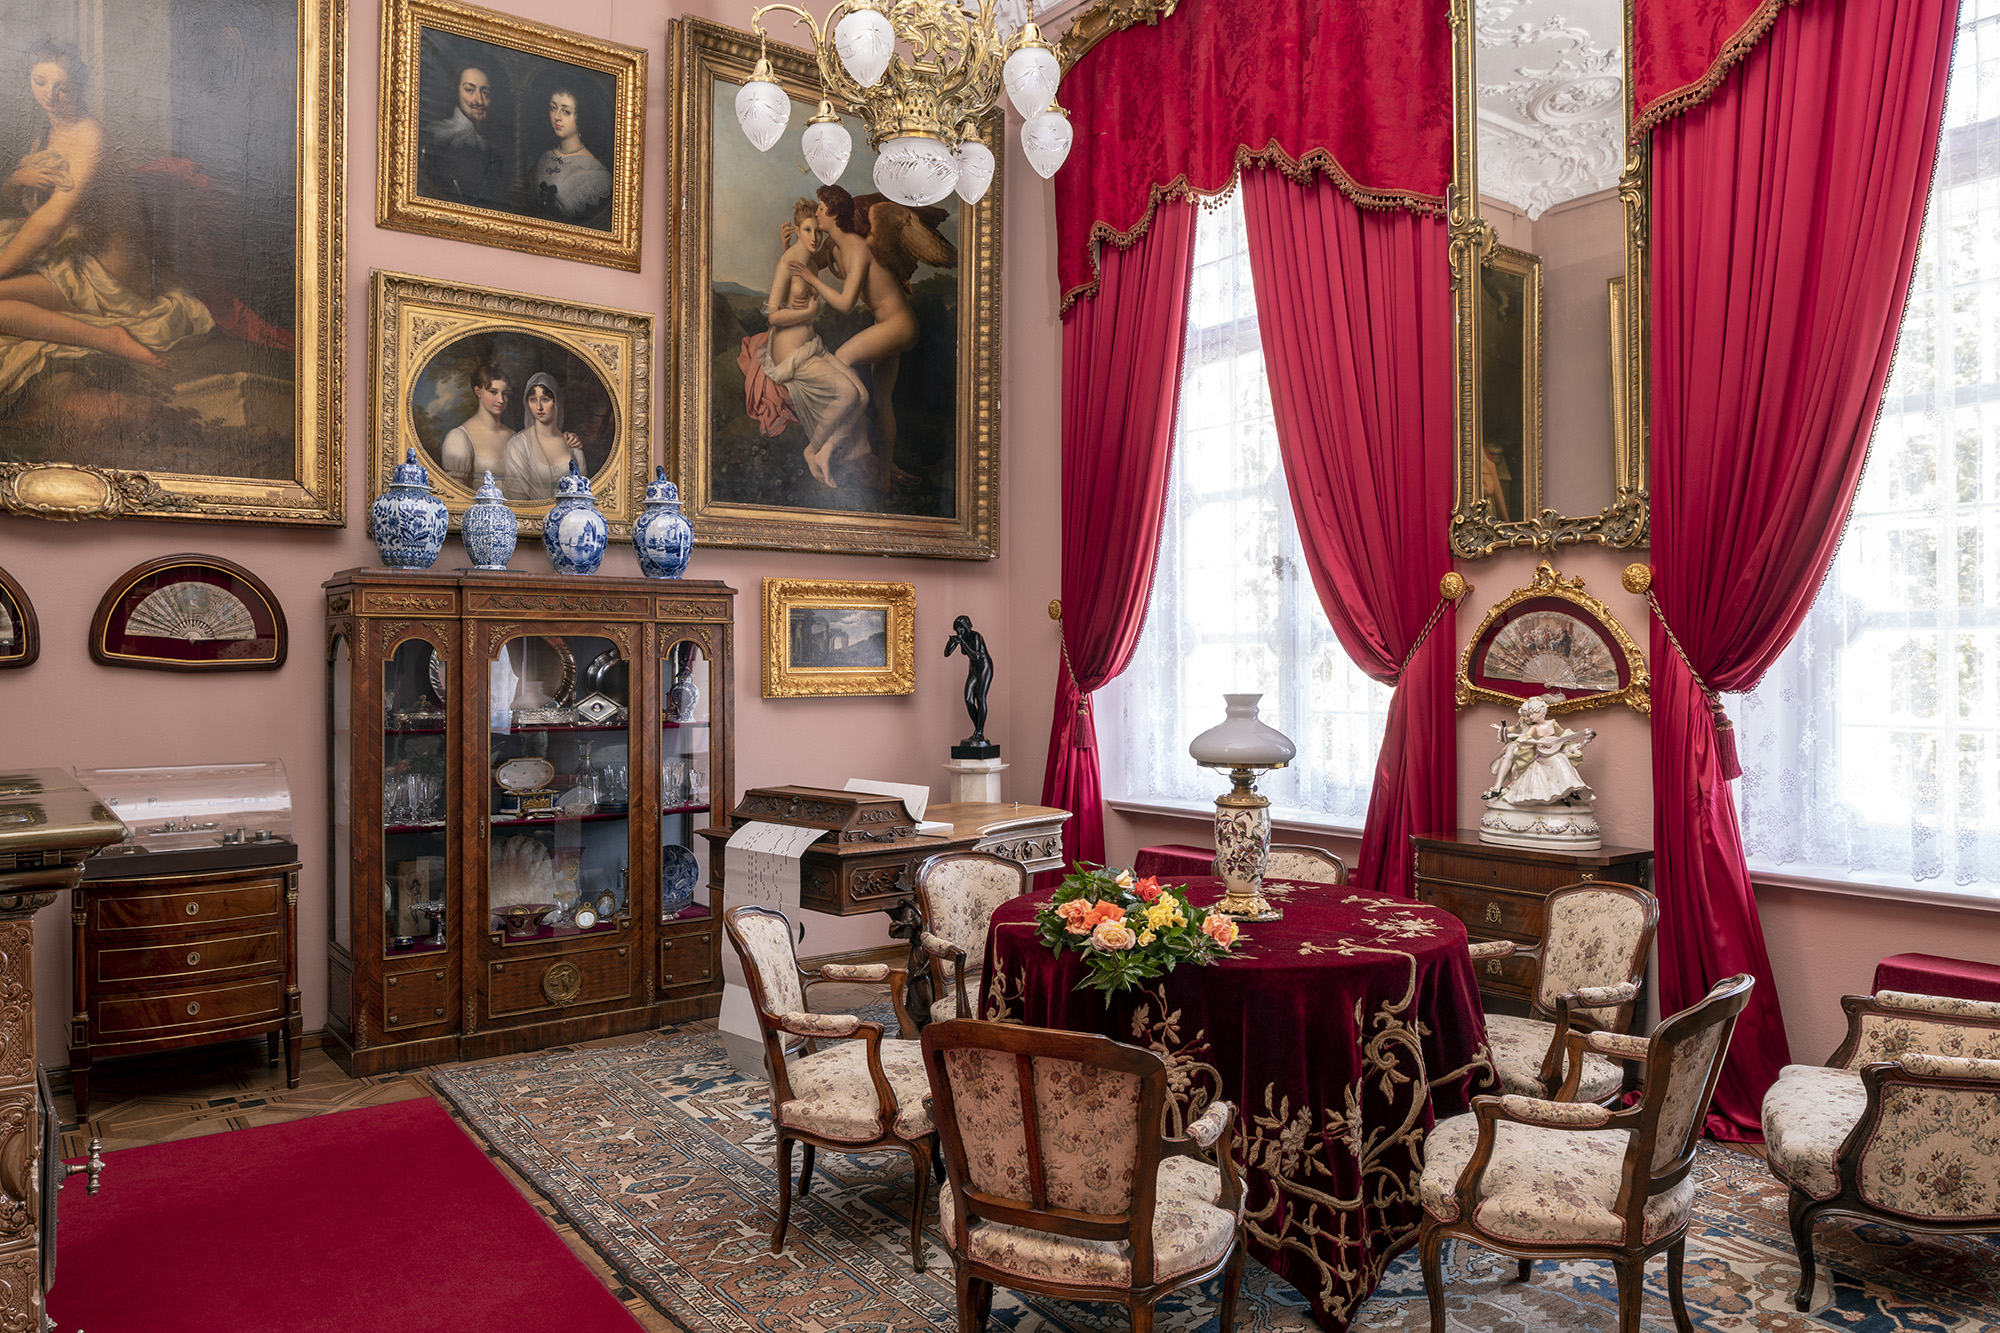 Współczesna kolorowa fotografia przedstawiająca wnętrze Małego Salonu w pałacu kozłowieckim. Po prawej w tle widoczne wysokie okna udekorowane czerwonymi lambrekinami i kotarami ze złoconą bordiurą, w oknach śnieżnobiałe firanki sięgające parapetu, pomiędzy oknami wysokie wąskie lustro kryształowe ze złoconą ramą. Poniżej w złoconej oprawie wachlarz i porcelanowa figura na szafce. Po prawej stronie w tle obrazy różnej wielkości oprawione w złocone ramy, poniżej przeszklona witryna z kryształami i srebrami. Na samym dole wśród drobiazgów pudełko po słodyczach z cukierni „Zjednoczeni Cukiernicy Warszawscy”. Na witrynie 4 fajansowe biało-kobaltowe wazy. W rogu pomieszczenia na postumencie ciemna figura kobiety pijącej z czarki. Na pierwszym planie stół okrągły przykryty mięsistą aksamitną tkaniną w kolorze ciemnego bordo, ze złotą wypukłą aplikacją. Na stole lampa naftowa o jasnej, porcelanowej podstawie i cebulastym białym kloszu. Wokół stołu fotele i krzesła tapicerowane w stylu Ludwika Filipa, za stołem przypominający kształtem fortepian włoski mechanizm pianomelodikon, odtwarzający muzykę z papierowych perforowanych taśm.